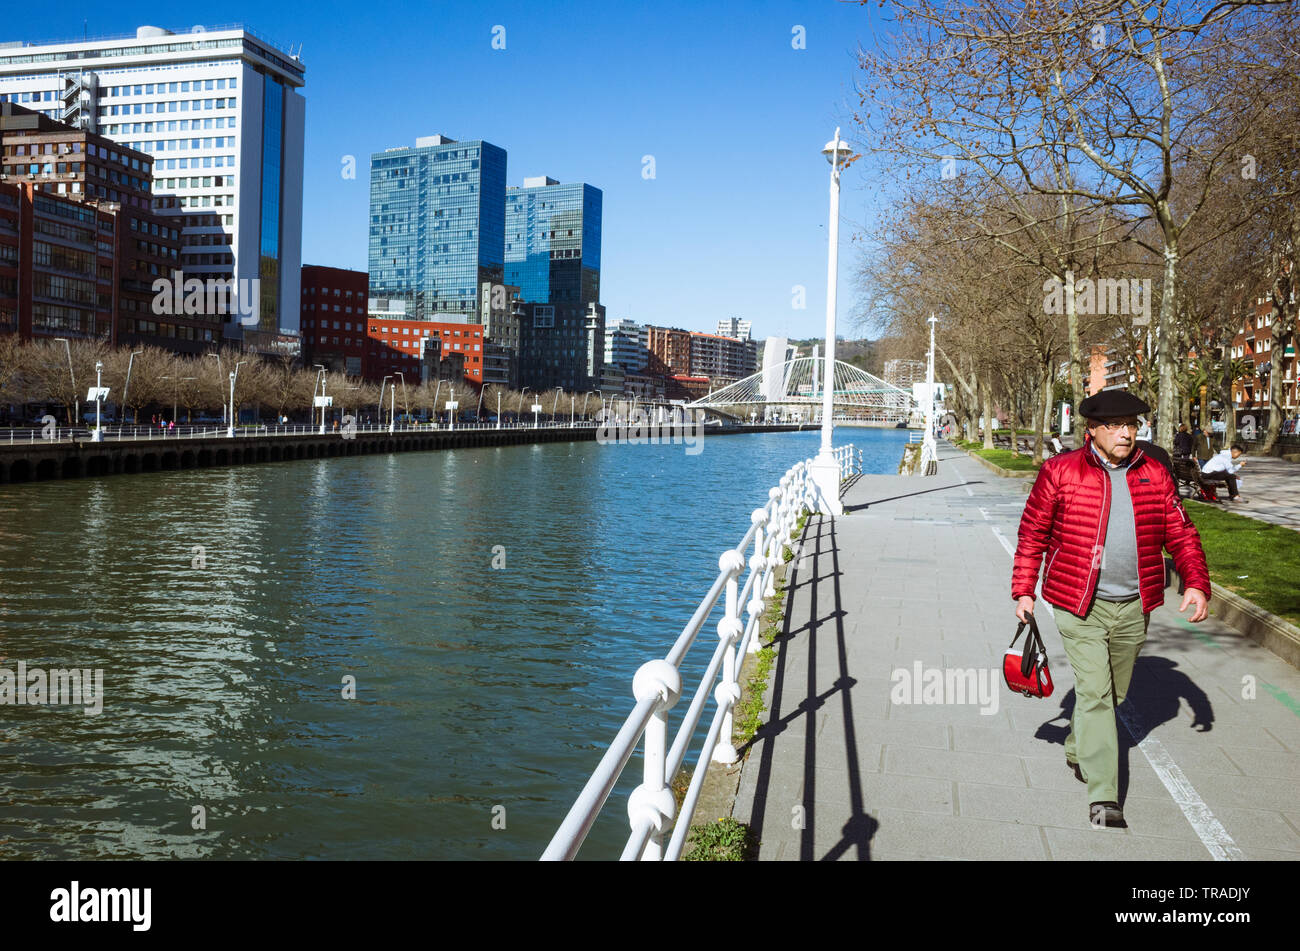 Bilbao, Vizcaya, País Vasco, España : Un hombre vestido con una boina chapela paseos por el río Nervión más allá del de la ciudad moderna Fotografía stock Alamy